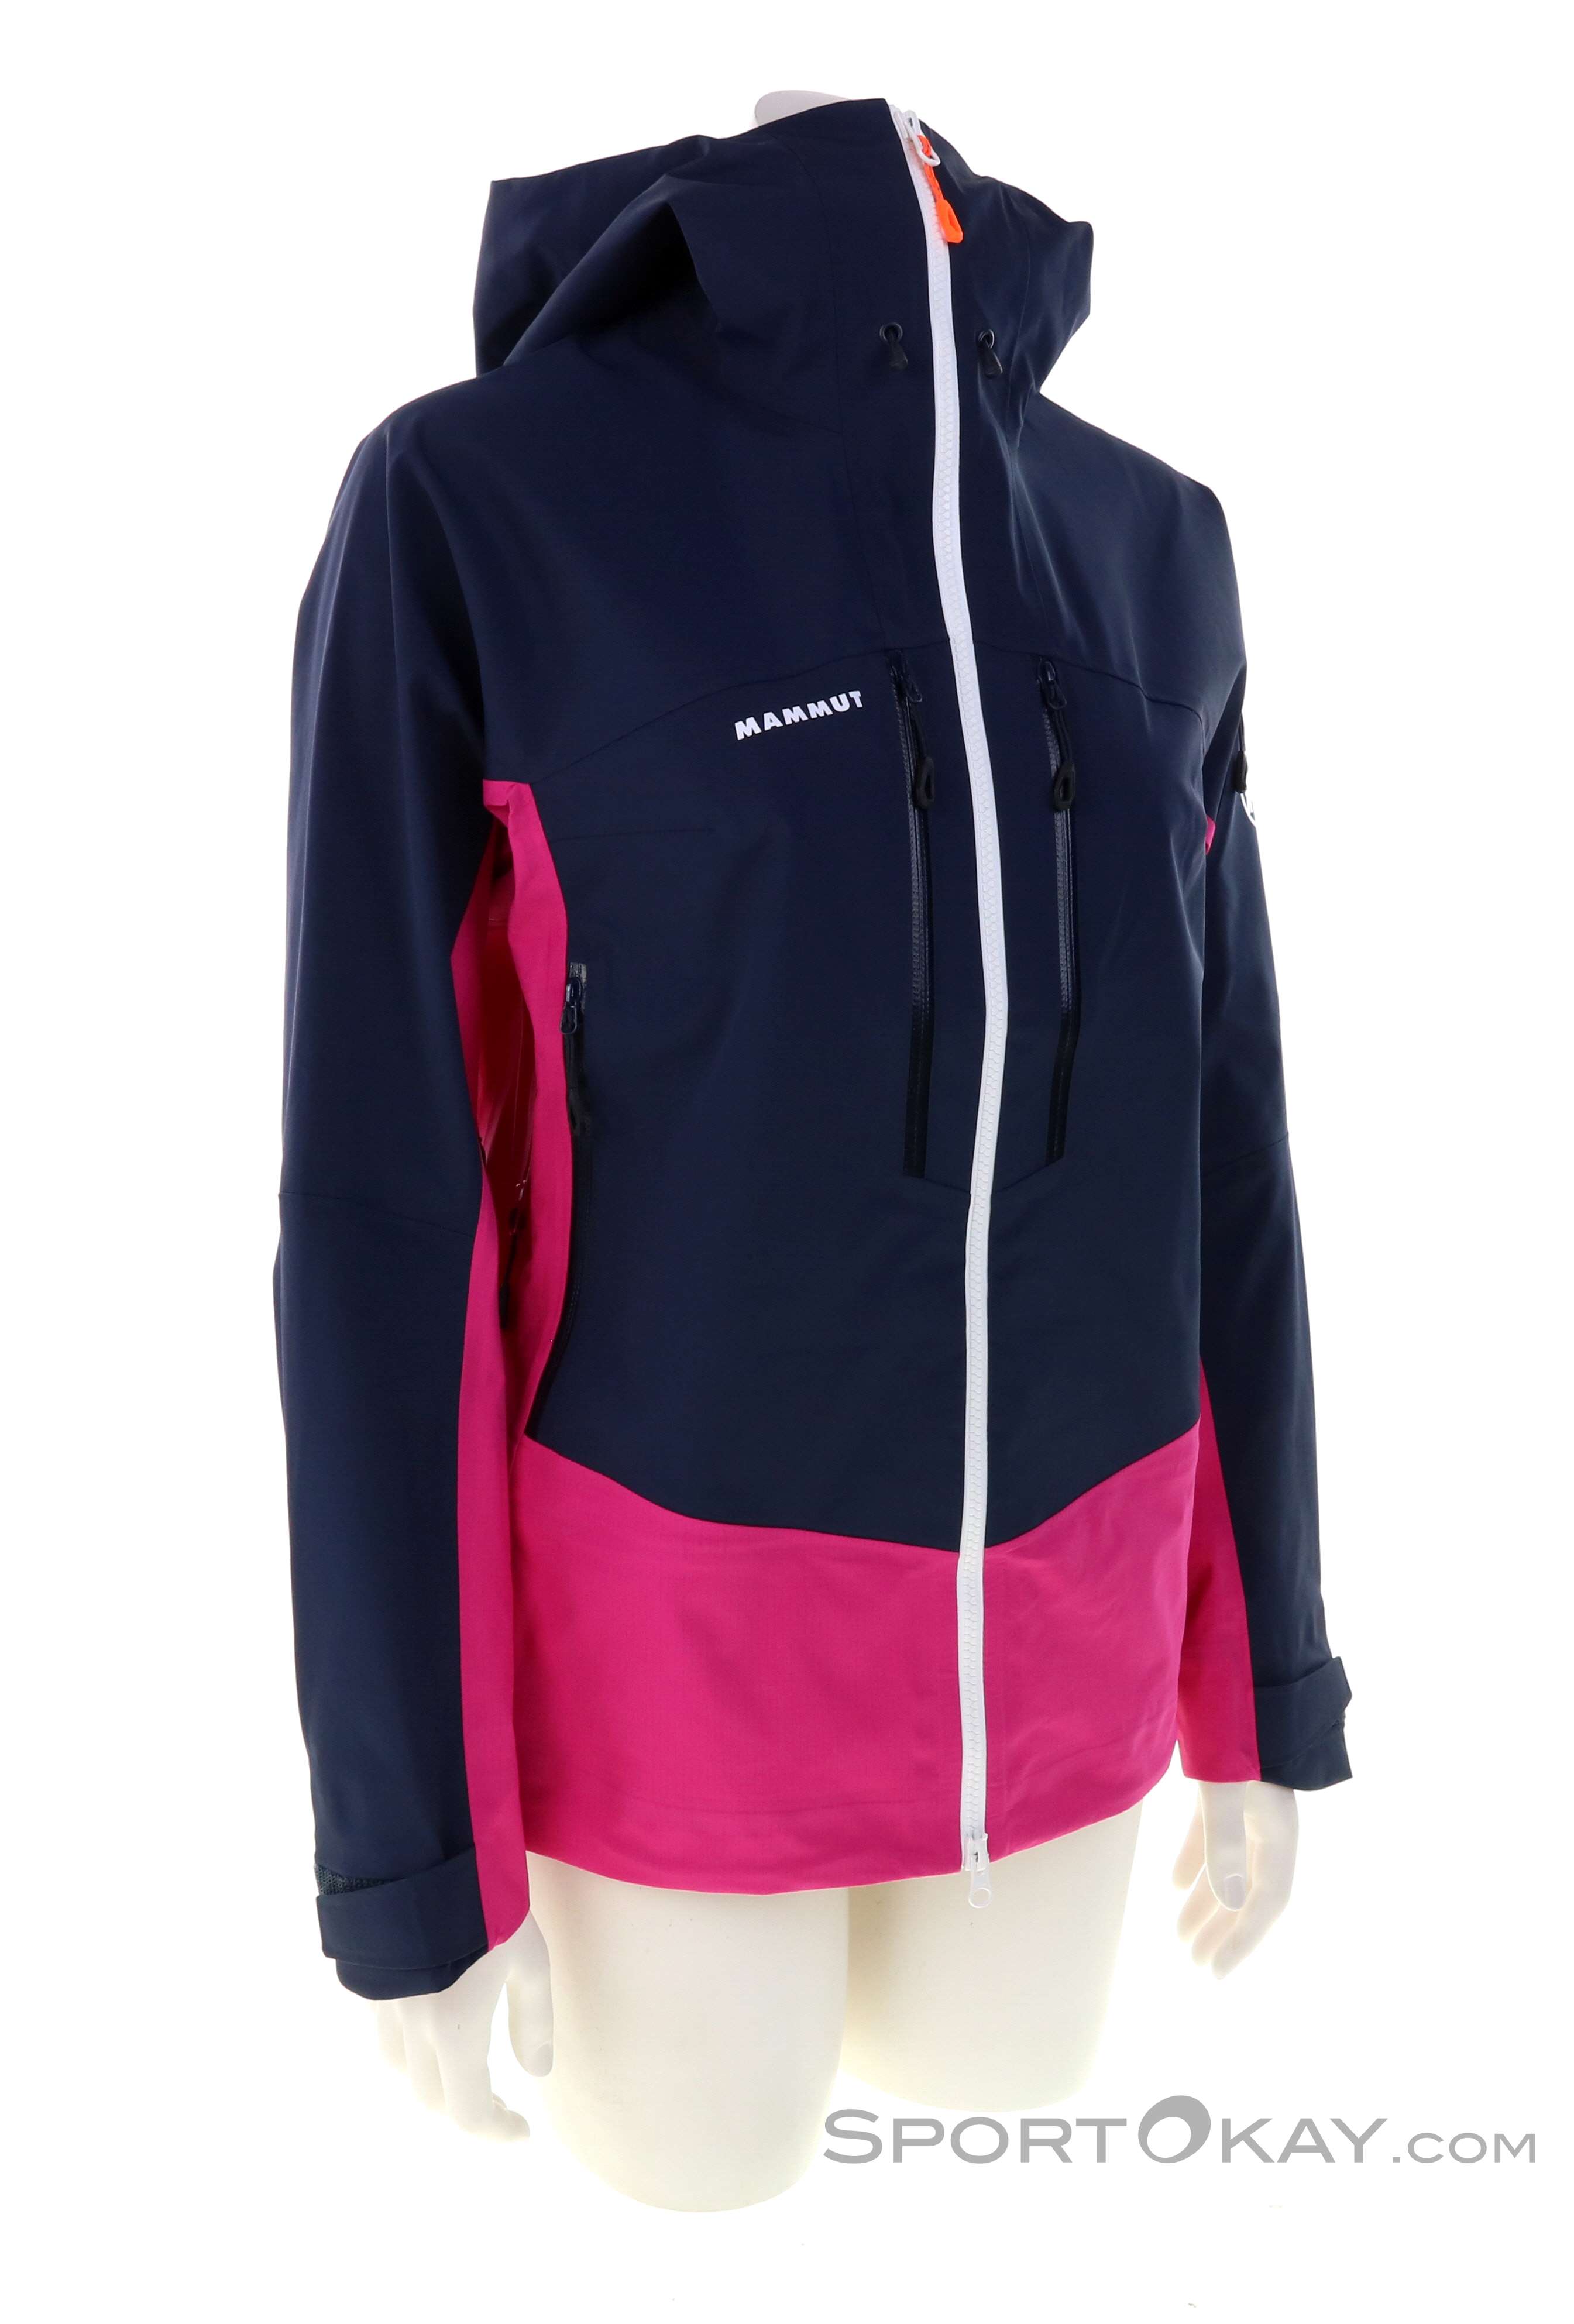 Mammut Taiss Pro HS Hooded Jacket Damen Outdoorjacke - Jacken -  Outdoorbekleidung - Outdoor - Alle